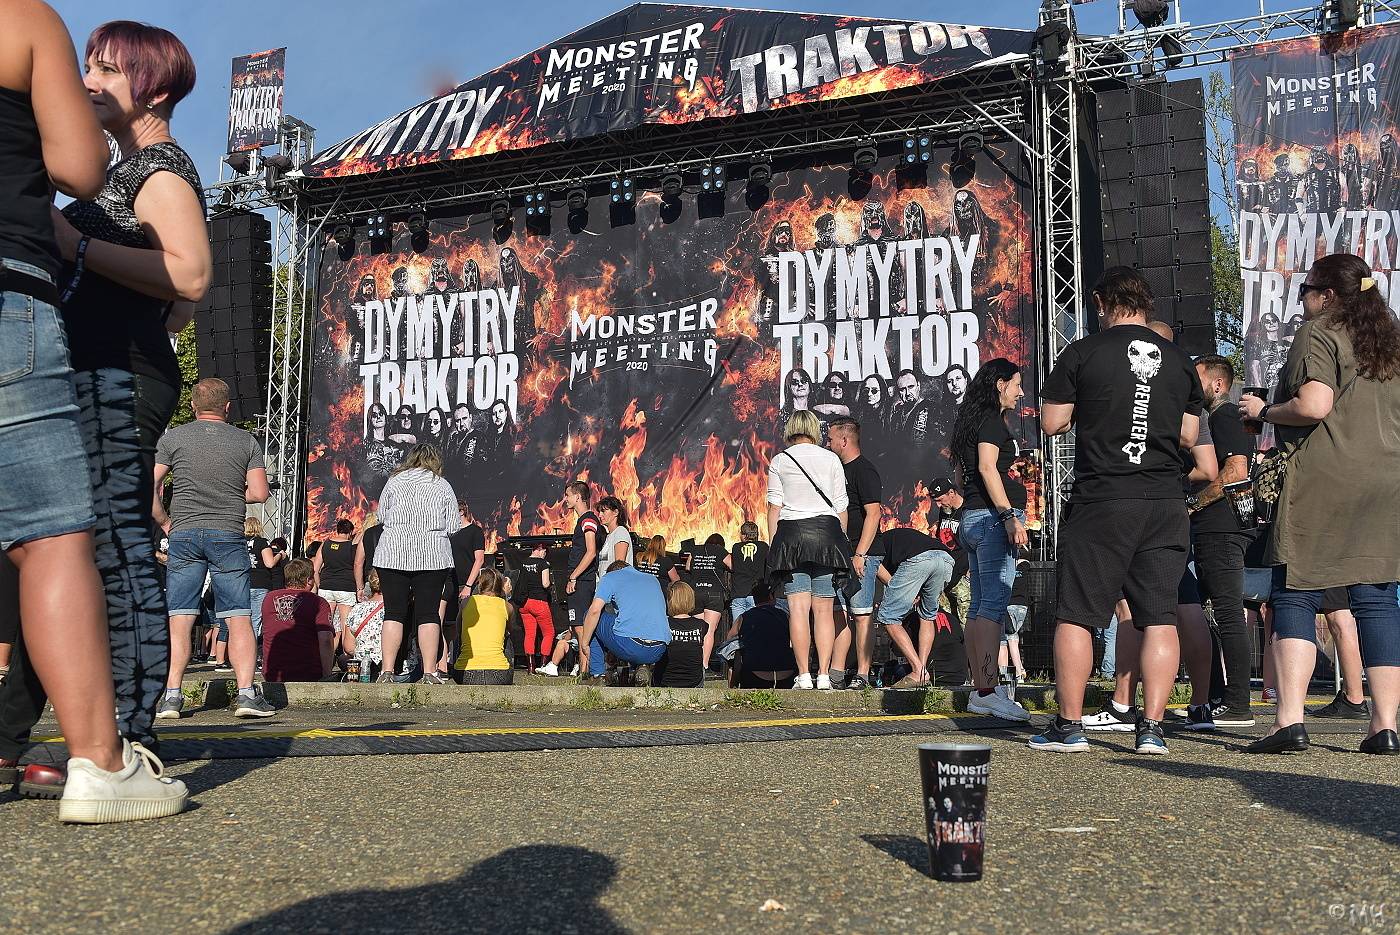 Monster Meeting začalo! Traktor a Dymytry zahráli v Plzni hned třikrát |  iREPORT – music&style magazine